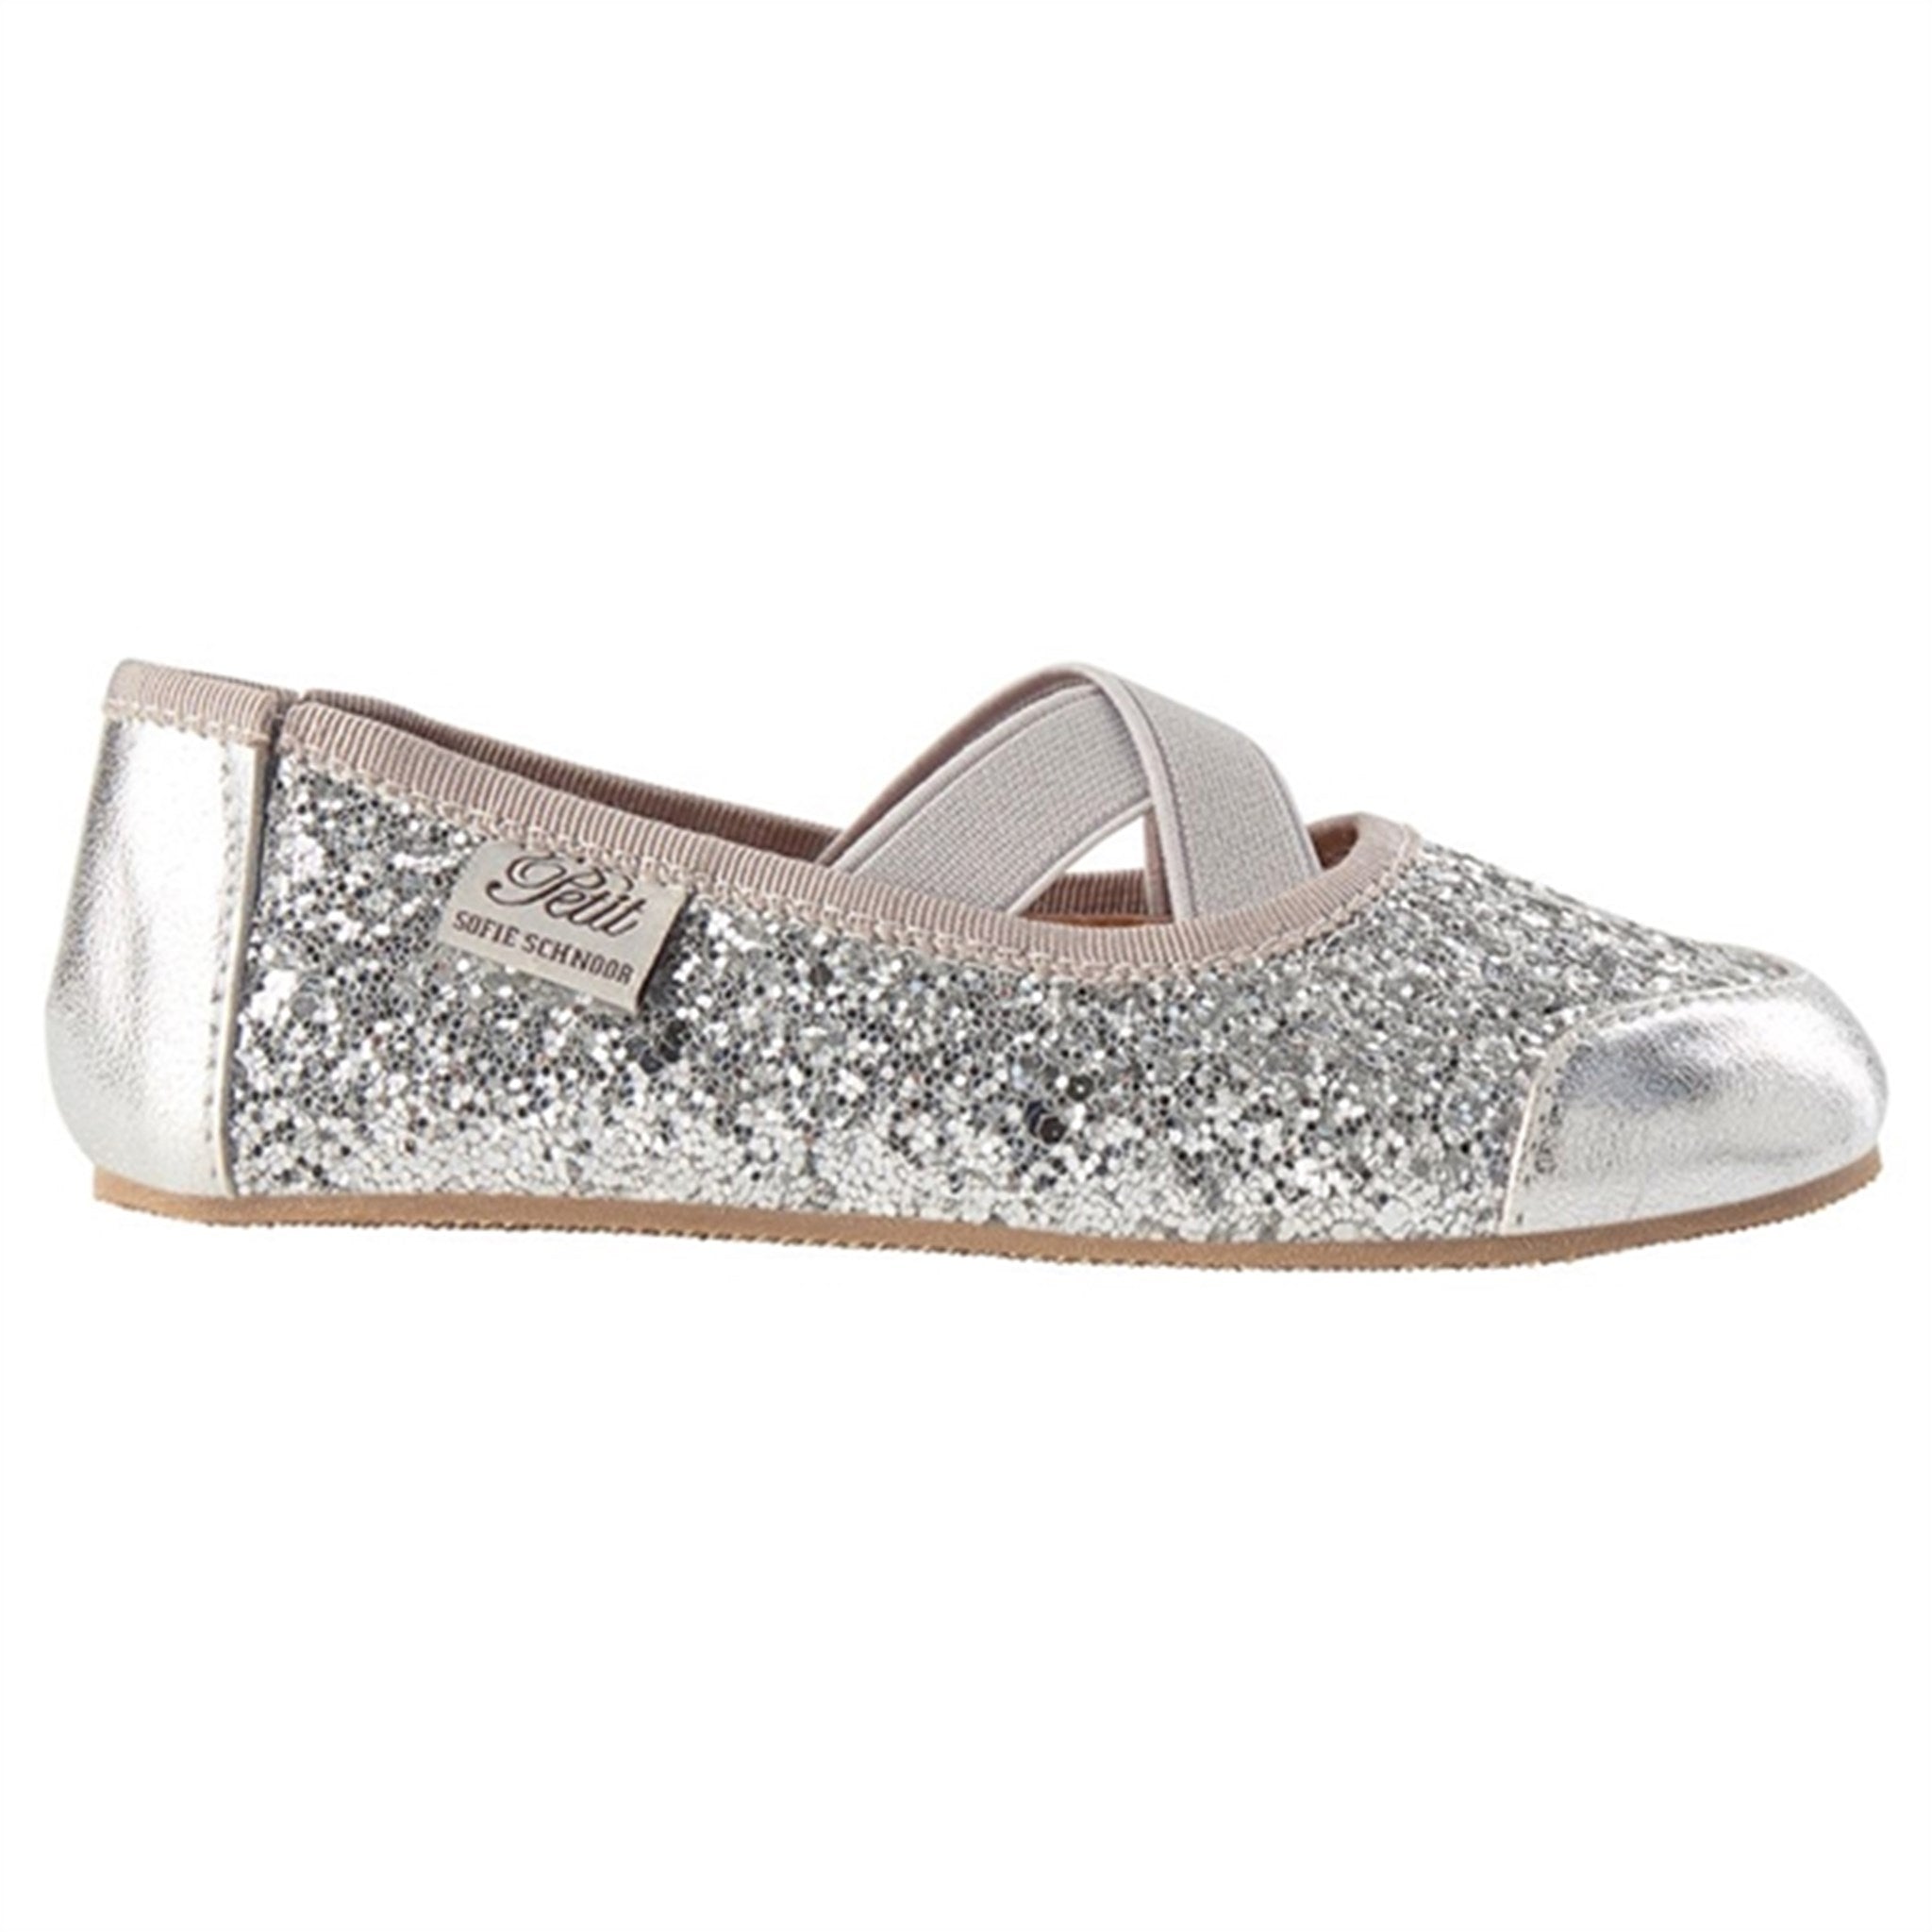 Sofie Schnoor Ballerina Indoors Shoes Silver 6